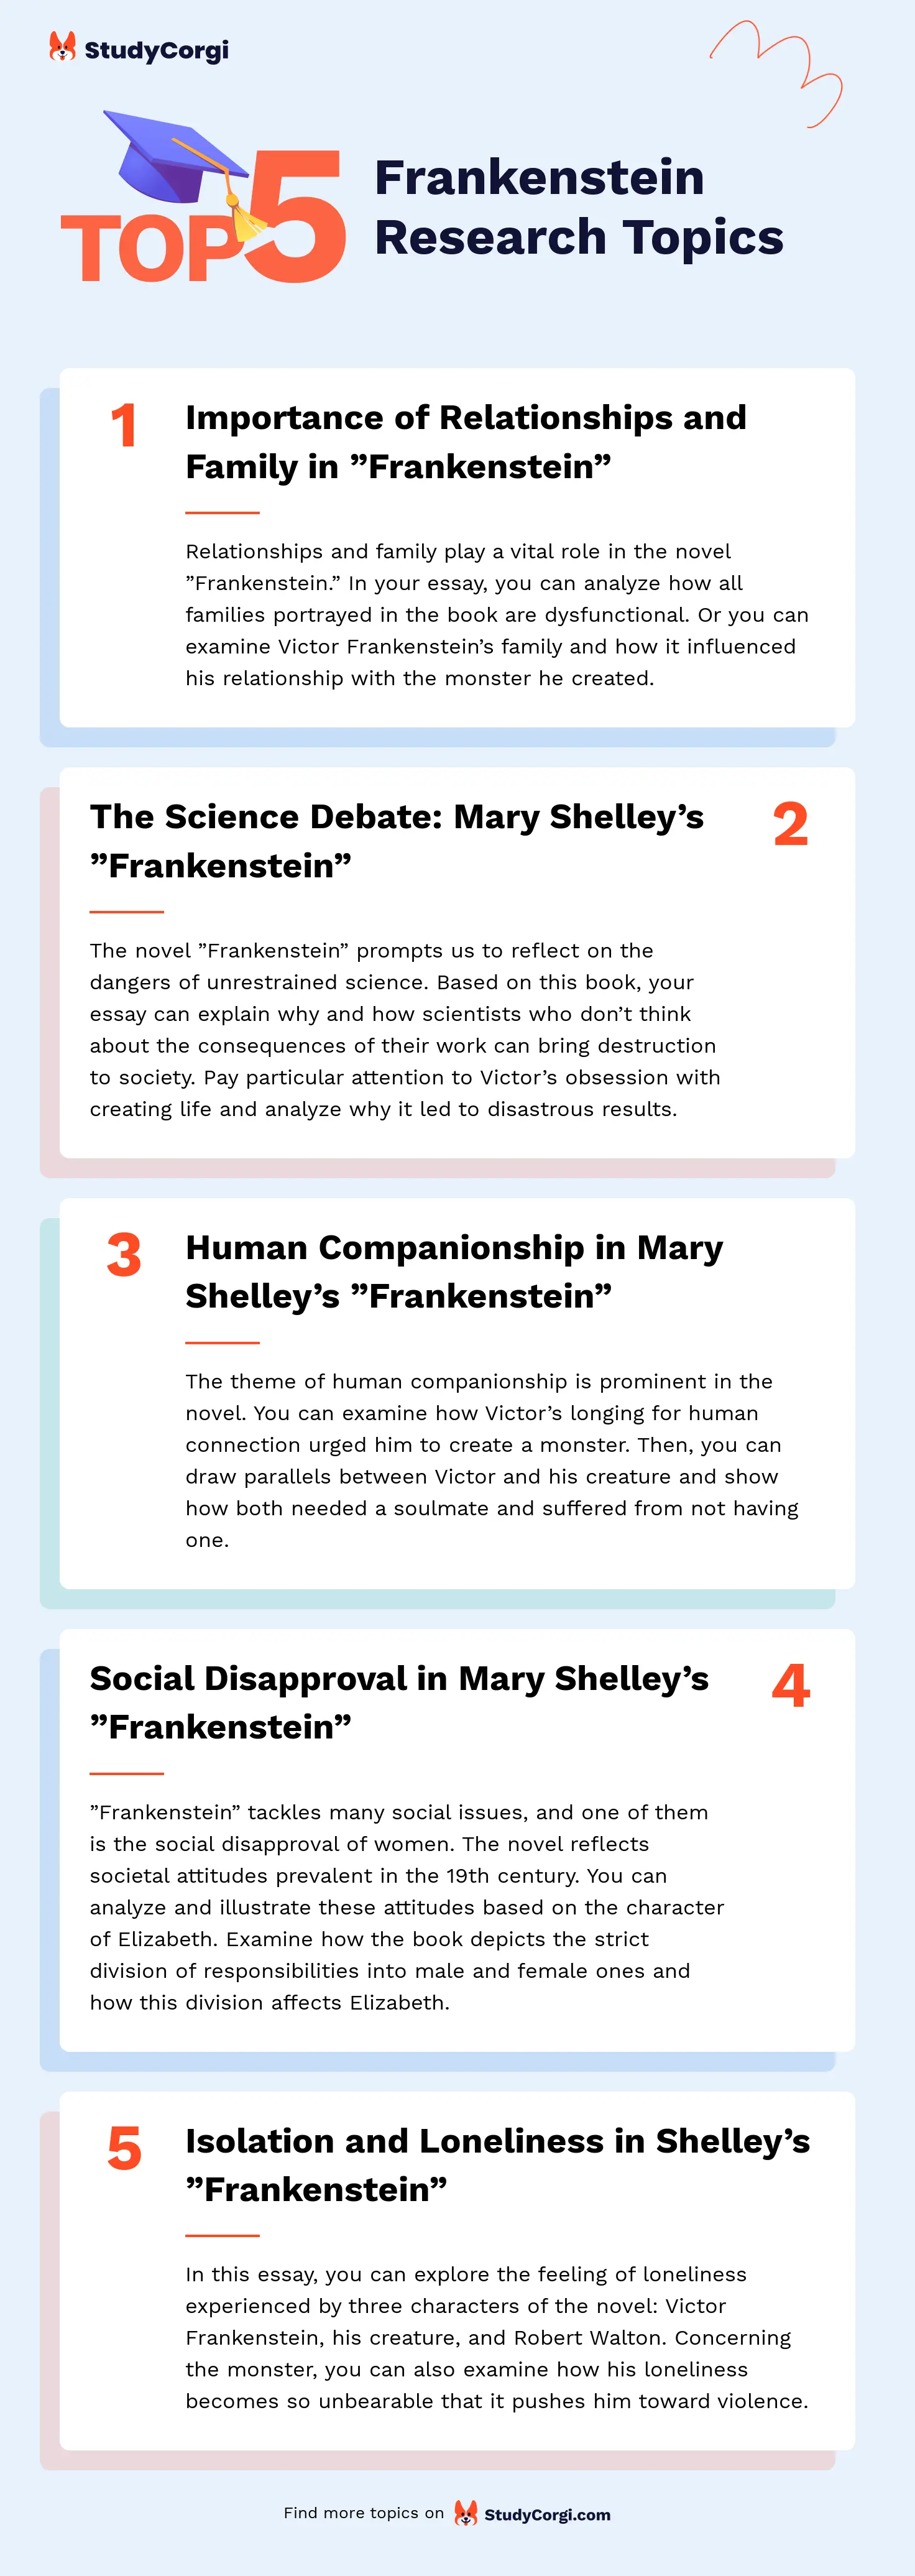 TOP-5 Frankenstein Research Topics